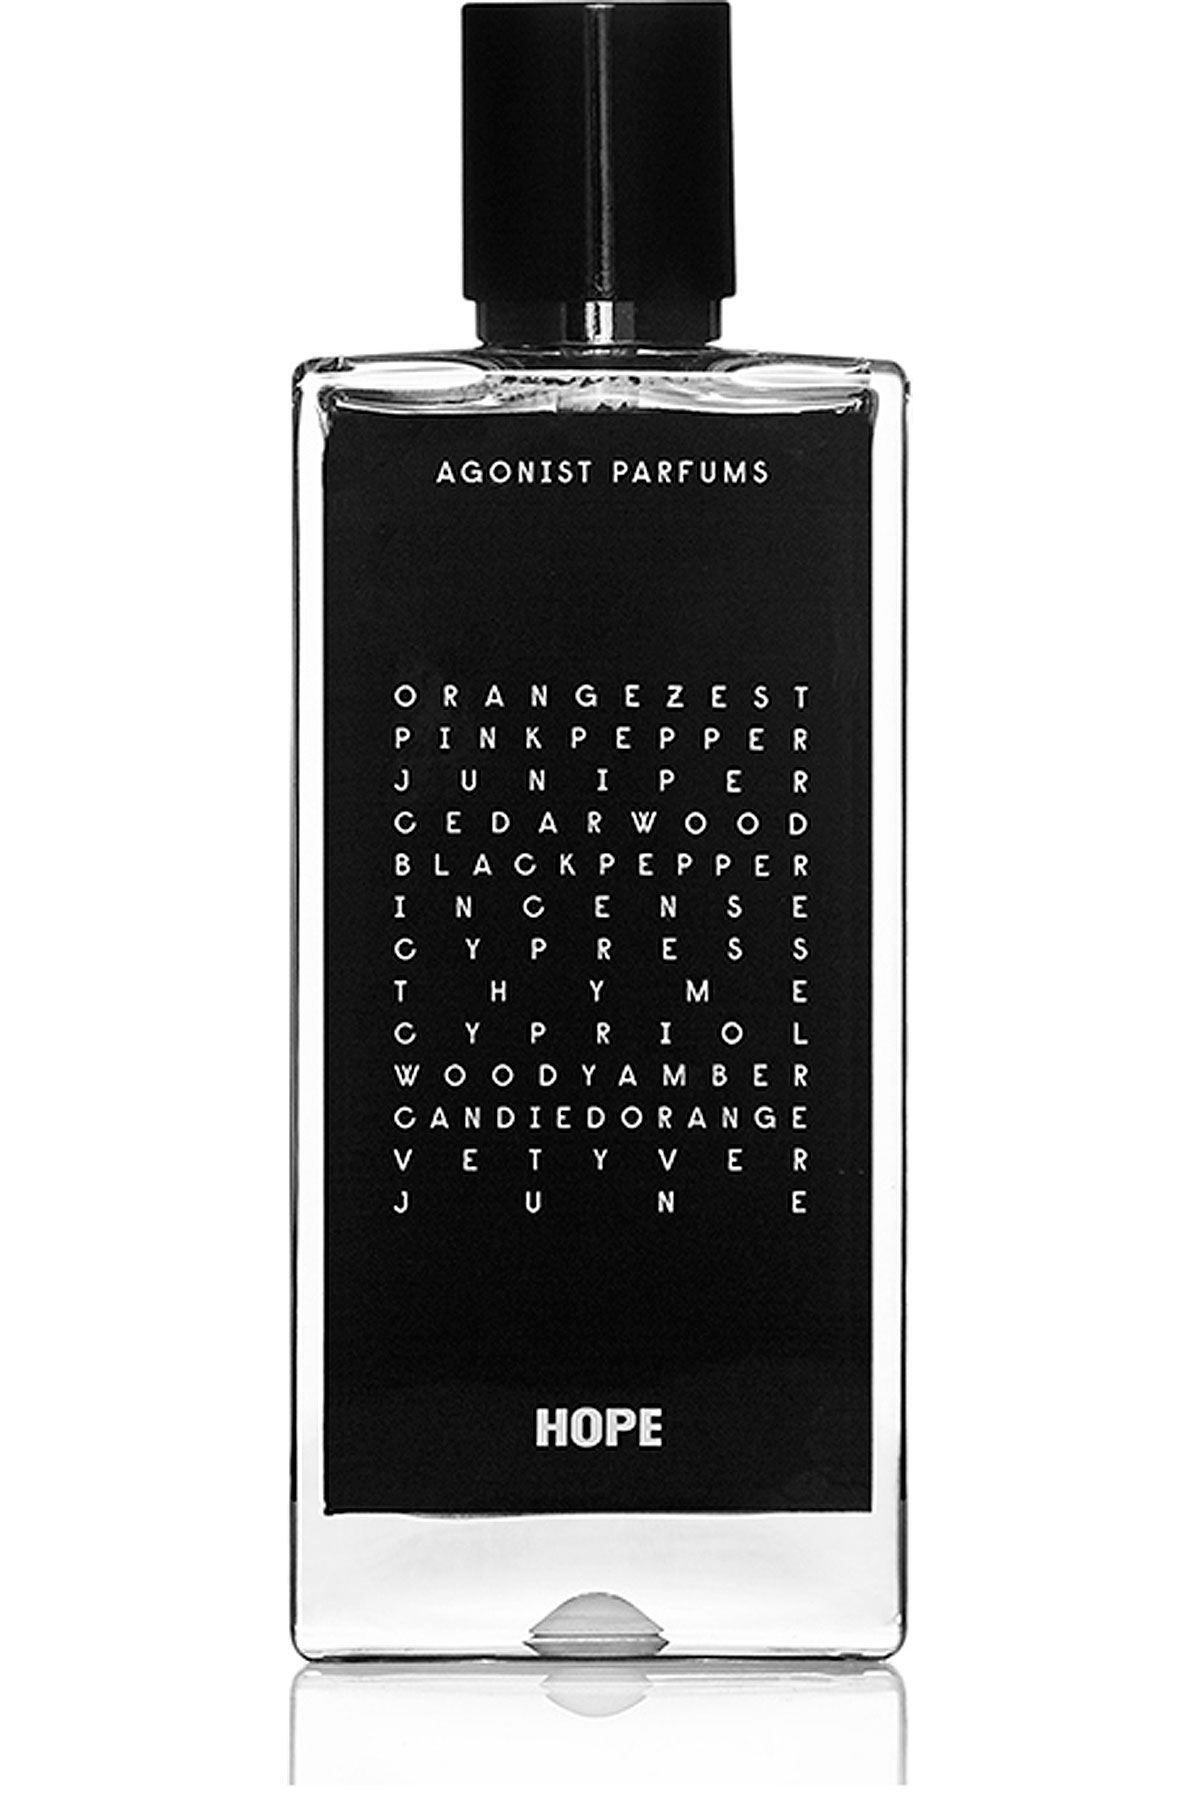 HOPE - EAU DE PARFUM - 50 ML, Womens Fragrances Agonist, Style code